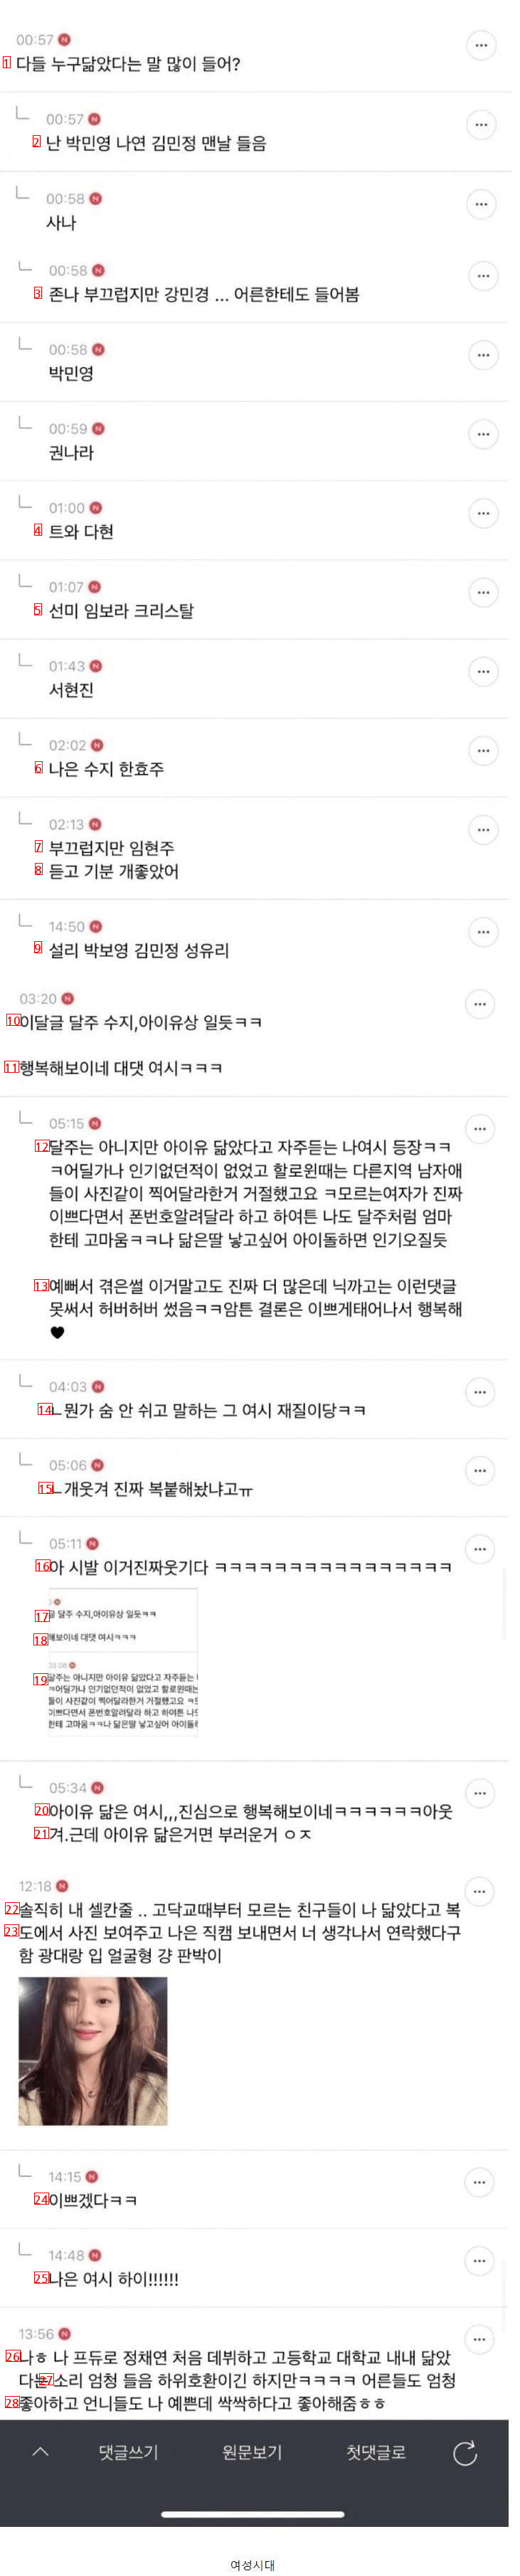 존예 여자연예인들 닮은꼴만 모인 커뮤니티..jpg